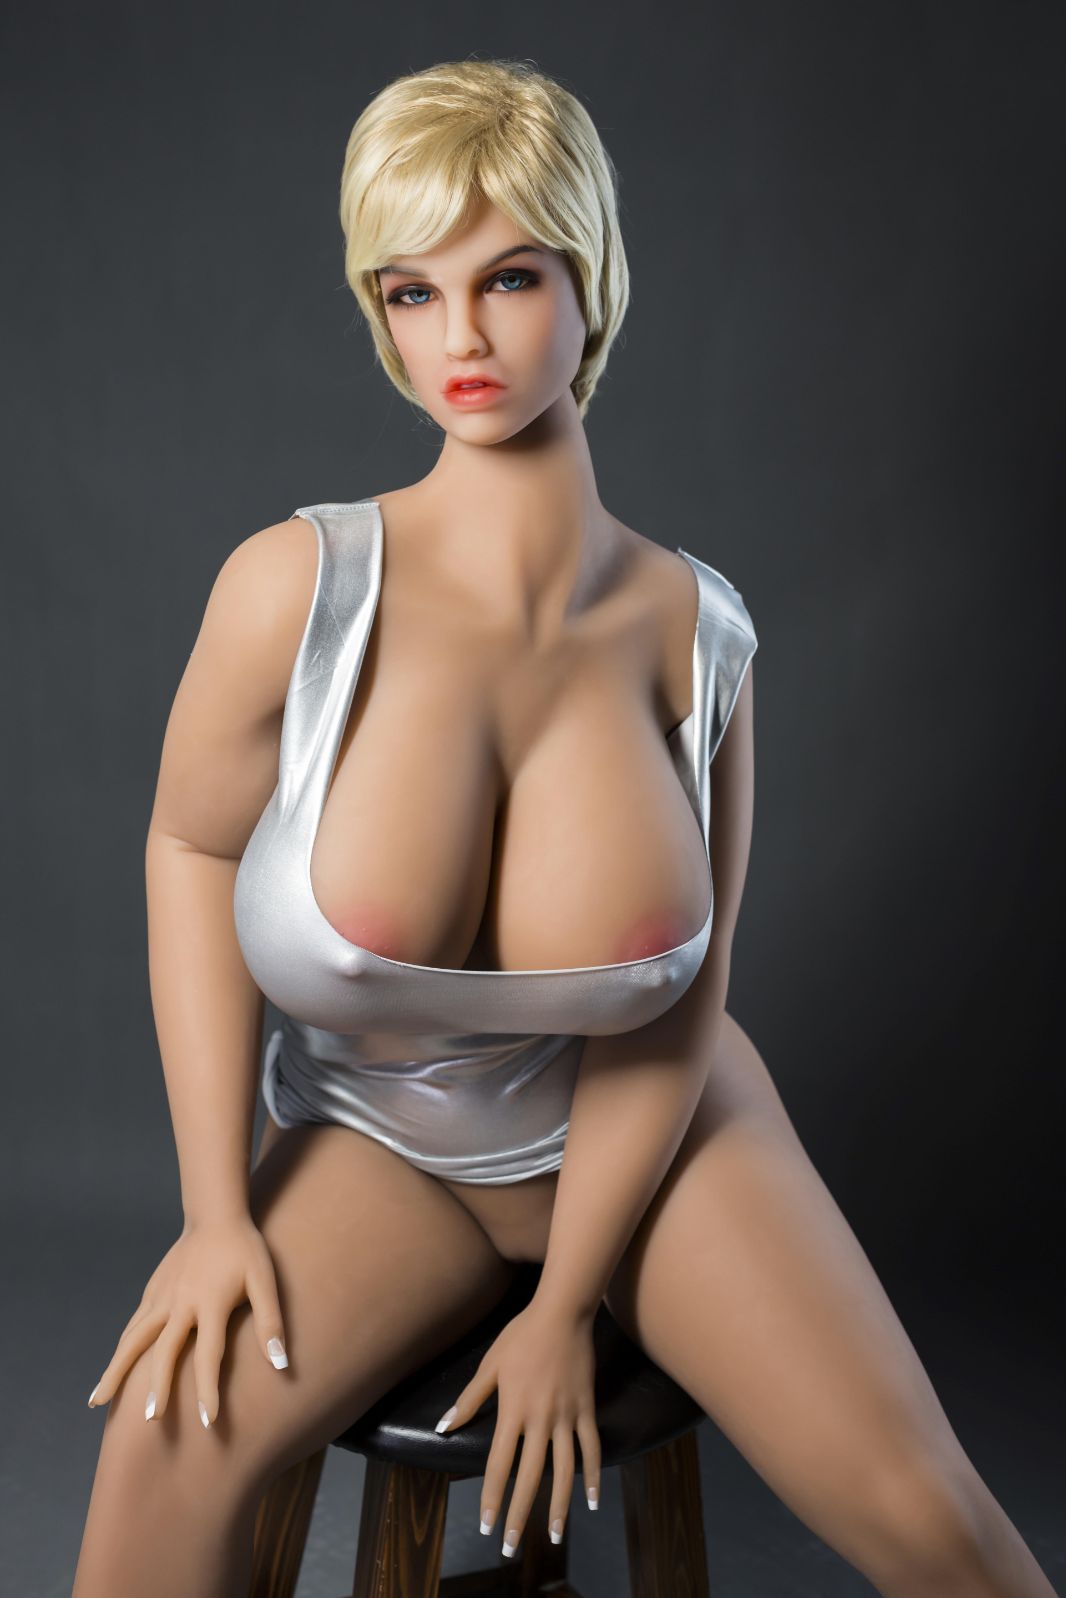 tyanna 163cm blonde curvy hr big boobs athletic tpe bbw sex doll(8)